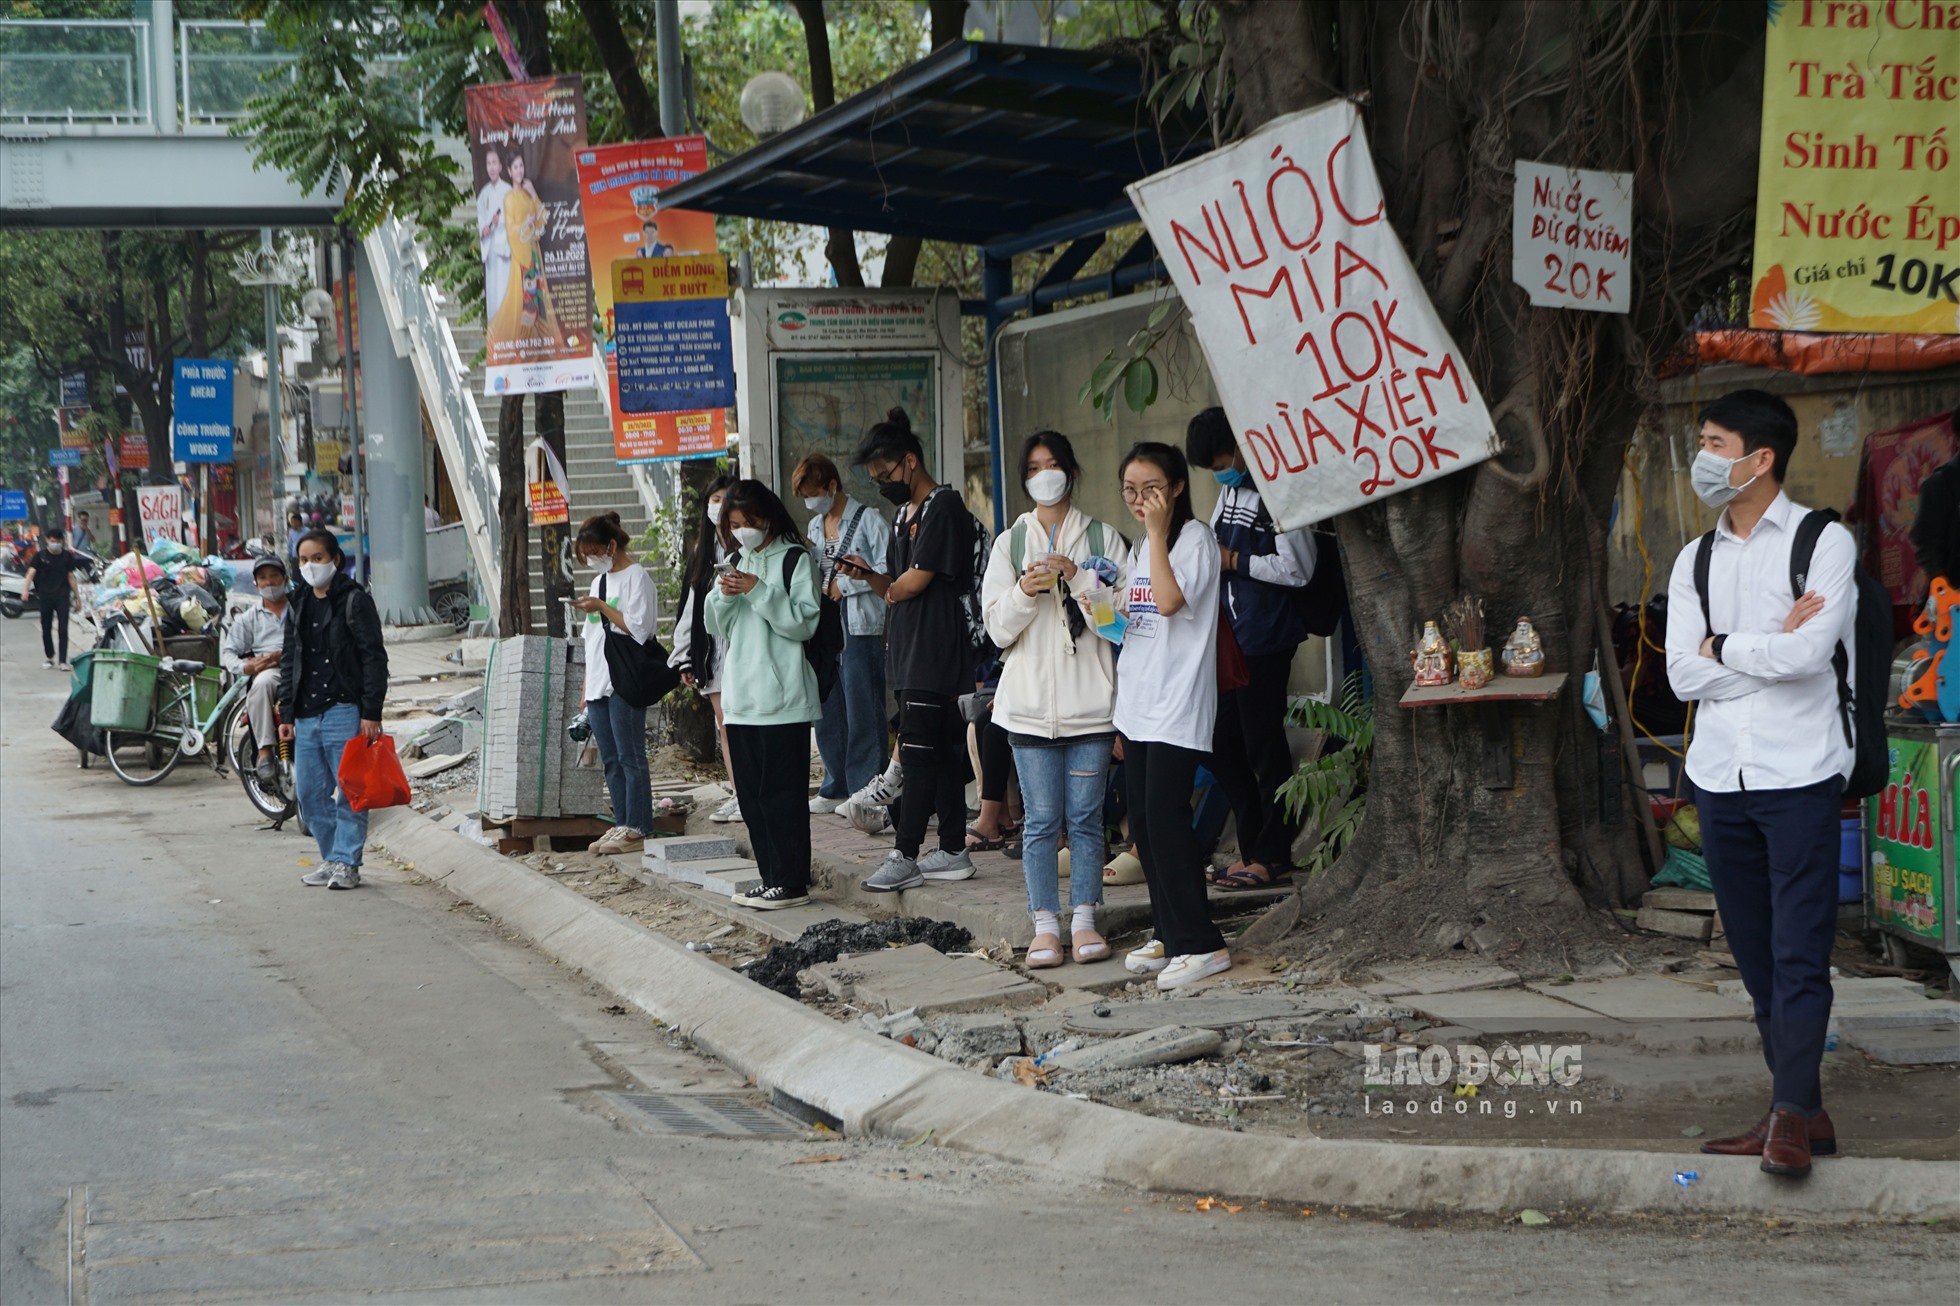 Bạn Ngô Hoàng Ngân, sinh viên năm 3 Học viện Phụ nữ Việt Nam phản ánh, hơn 3 năm sống tại Hà Nội, không ít lần Ngân chứng kiến cảnh đào lên rồi lấp xuống tại các vỉa hè trên nhiều tuyến phố Thủ đô.